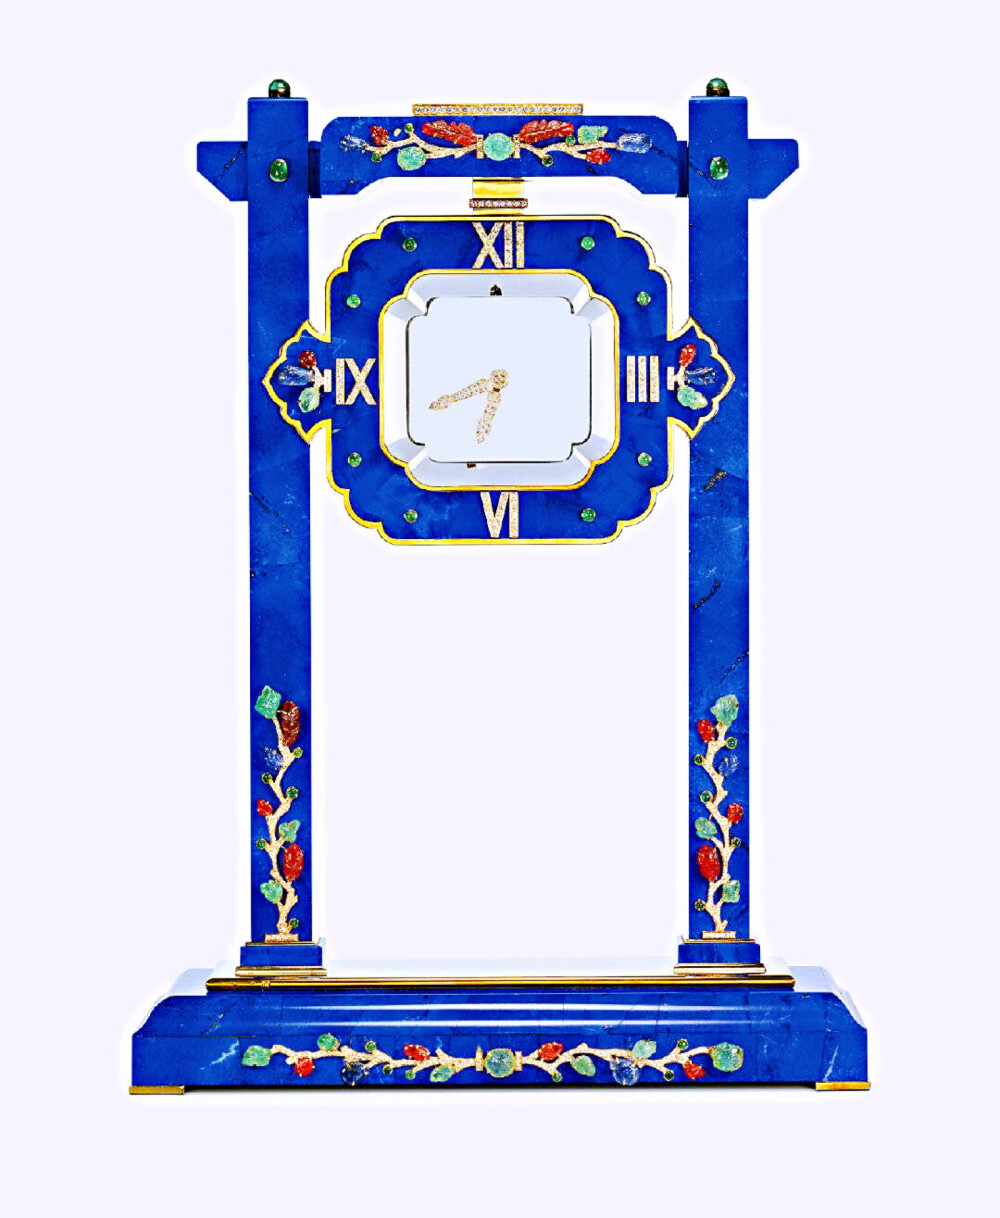  卡地亚神秘钟 ·
1912年，卡地亚首次推出‘MYSTERY’系列神秘钟，被称为“钟表史上的奇迹。”
神秘钟多以缟玛瑙、水晶、“水果锦囊”TUTTI FRUTTI等珠宝元素构成，具有ART DECO装饰艺术风格。